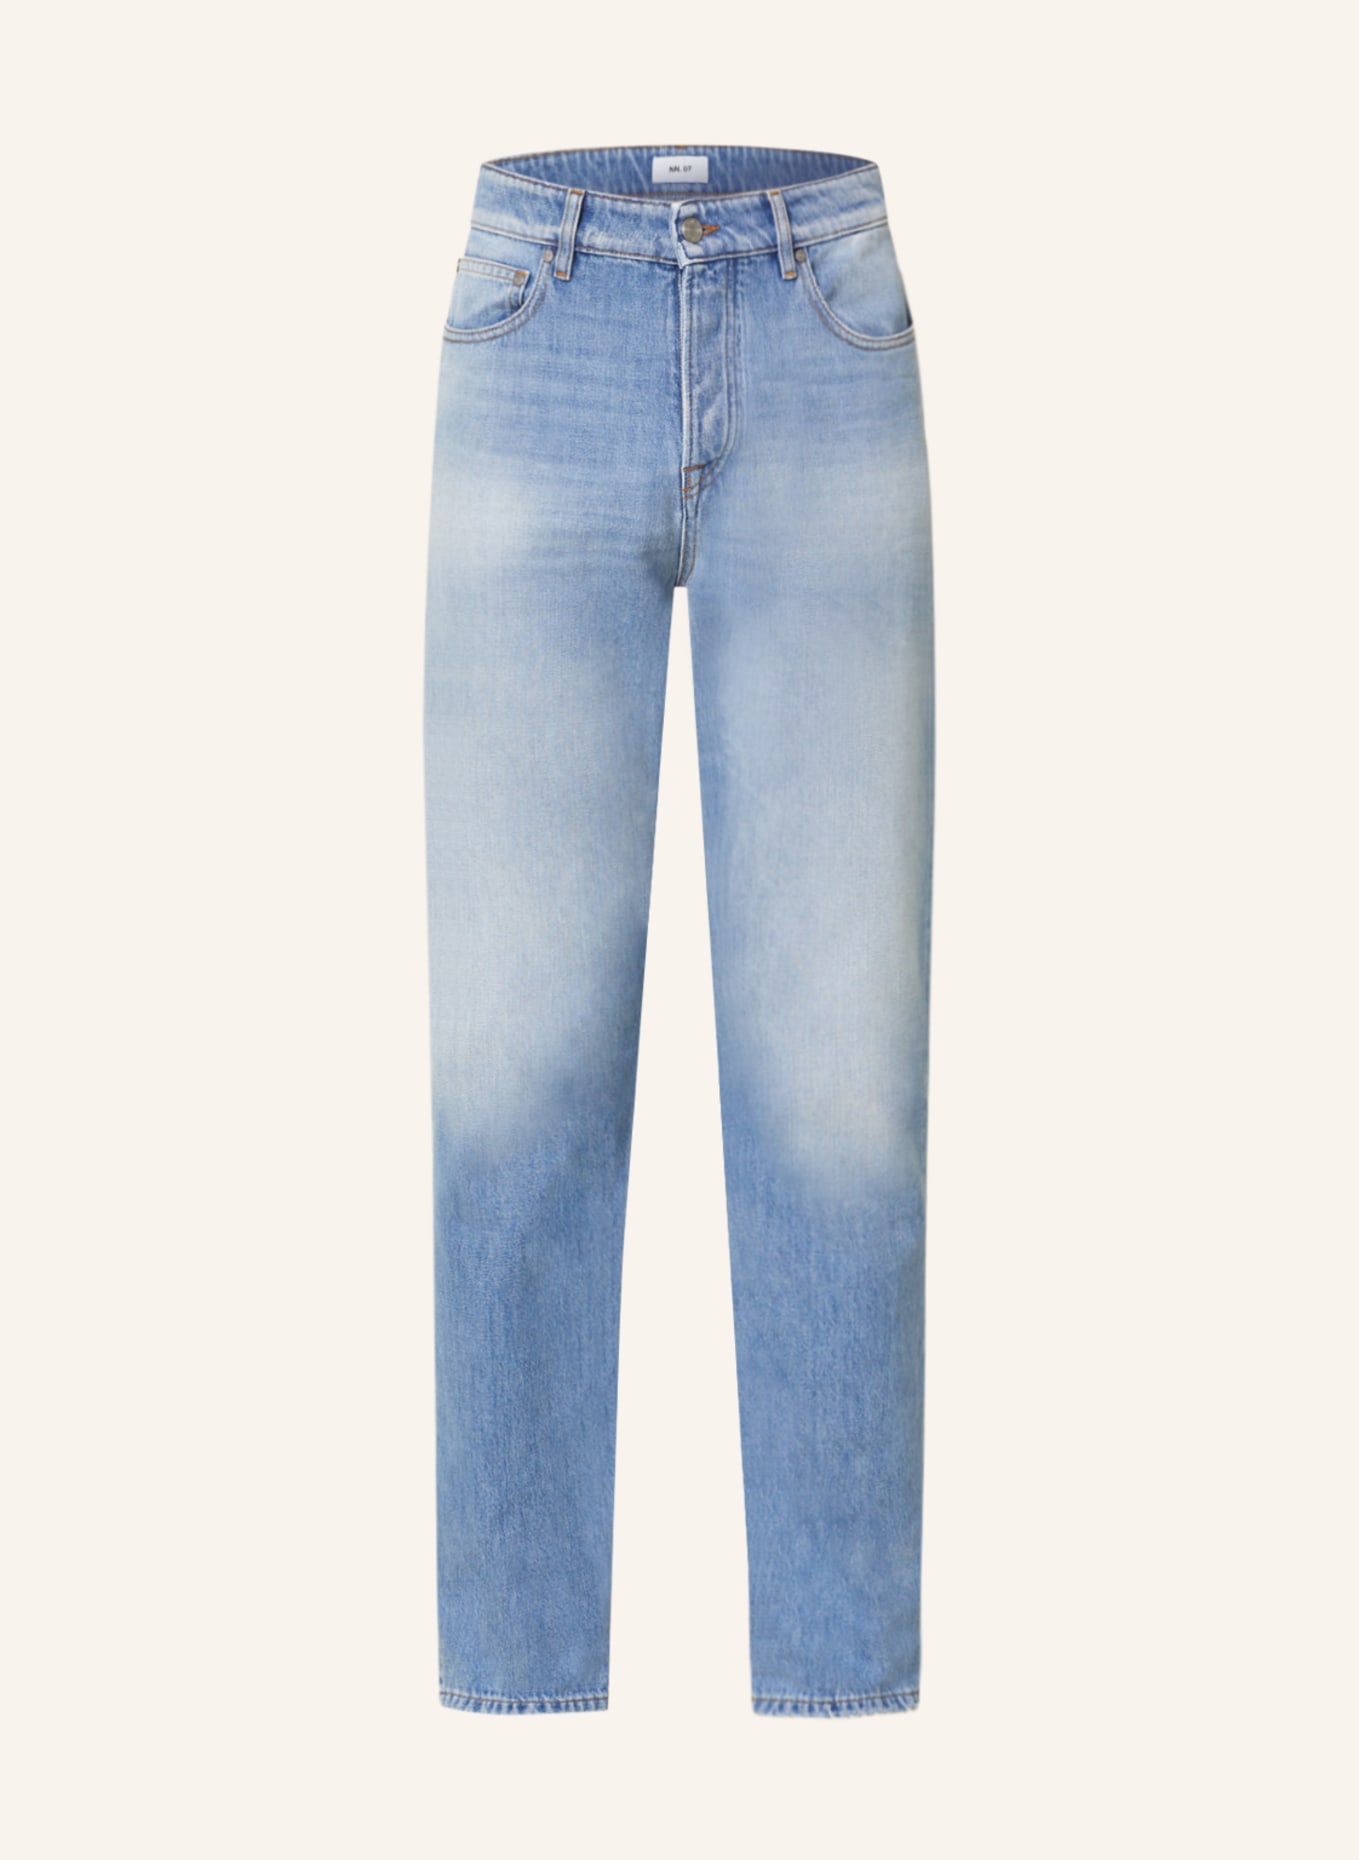 NN.07 Jeans JOHNNY regular fit, Color: 229 Light Blue Denim (Image 1)